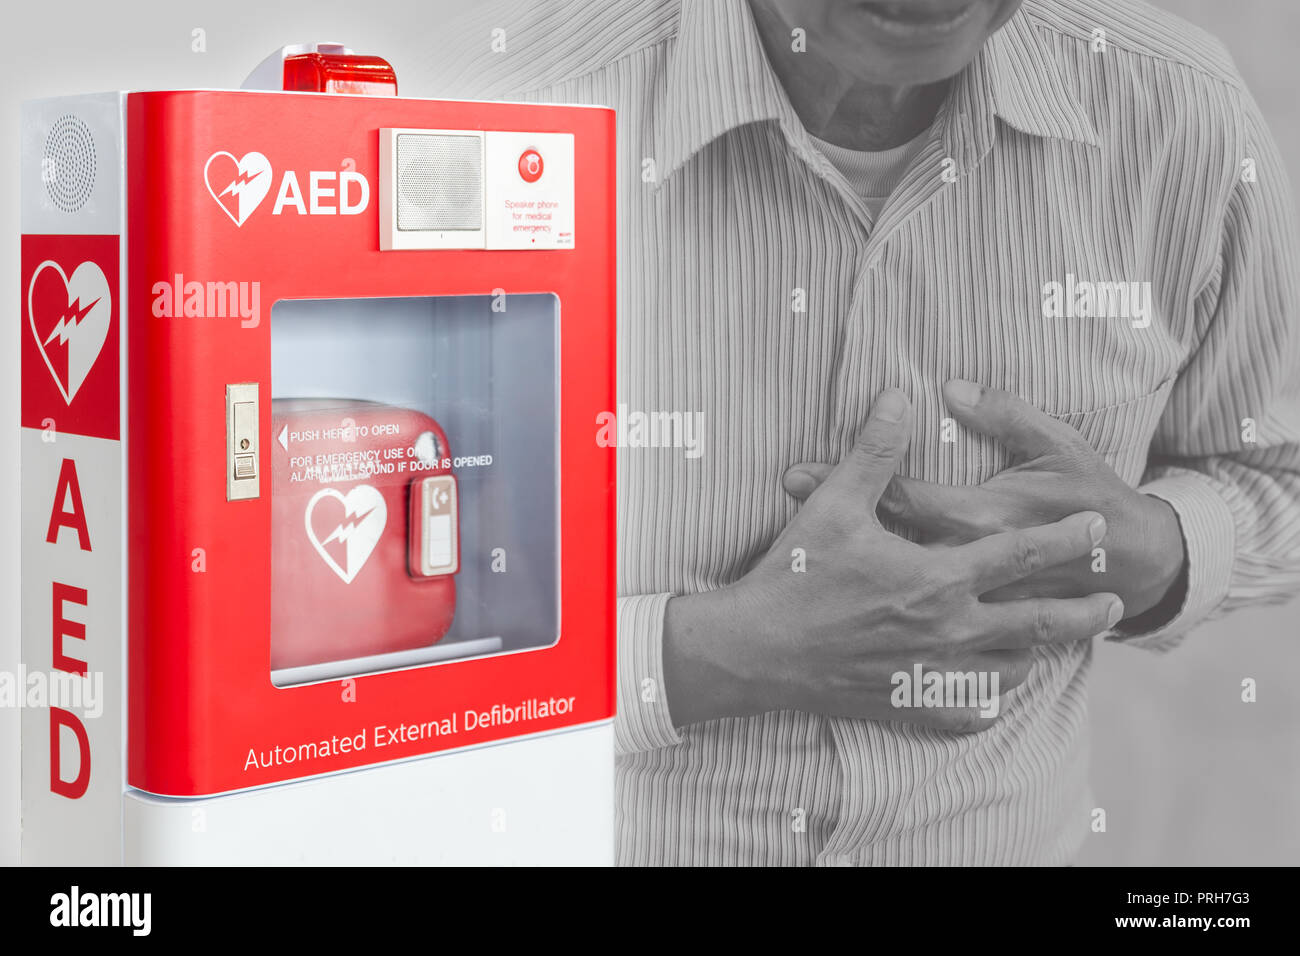 AED oder Automatisierter Externer Defibrillator Erste-Hilfe-Gerät für den Menschen helfen, Schlaganfall oder Herzinfarkt im öffentlichen Raum Stockfoto